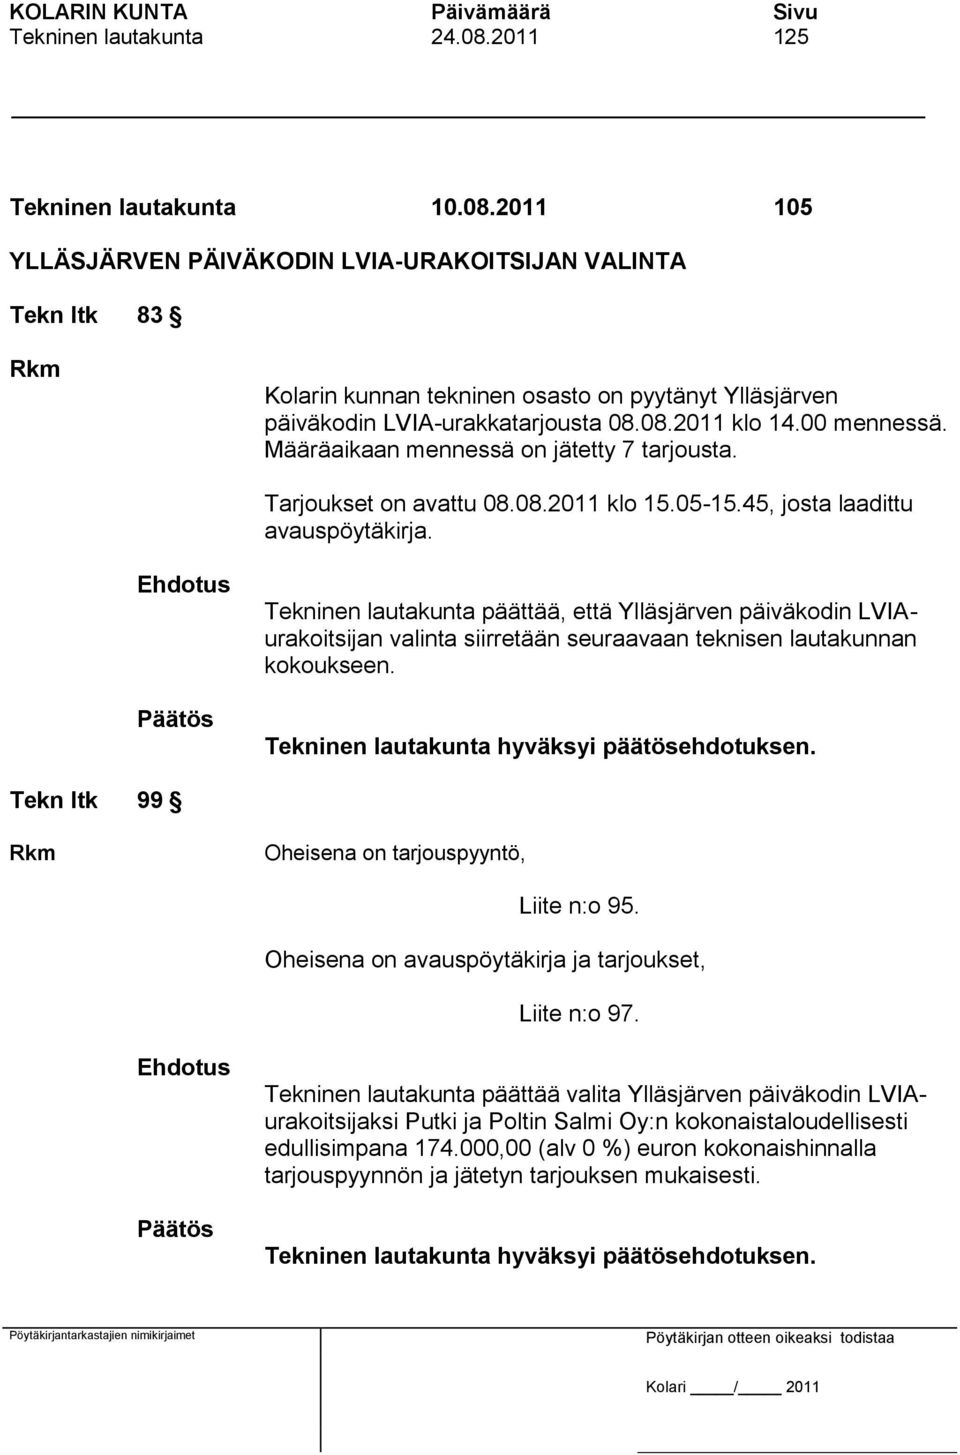 Tekninen lautakunta päättää, että Ylläsjärven päiväkodin LVIAurakoitsijan valinta siirretään seuraavaan teknisen lautakunnan kokoukseen. Tekn ltk 99 Rkm Oheisena on tarjouspyyntö, Liite n:o 95.